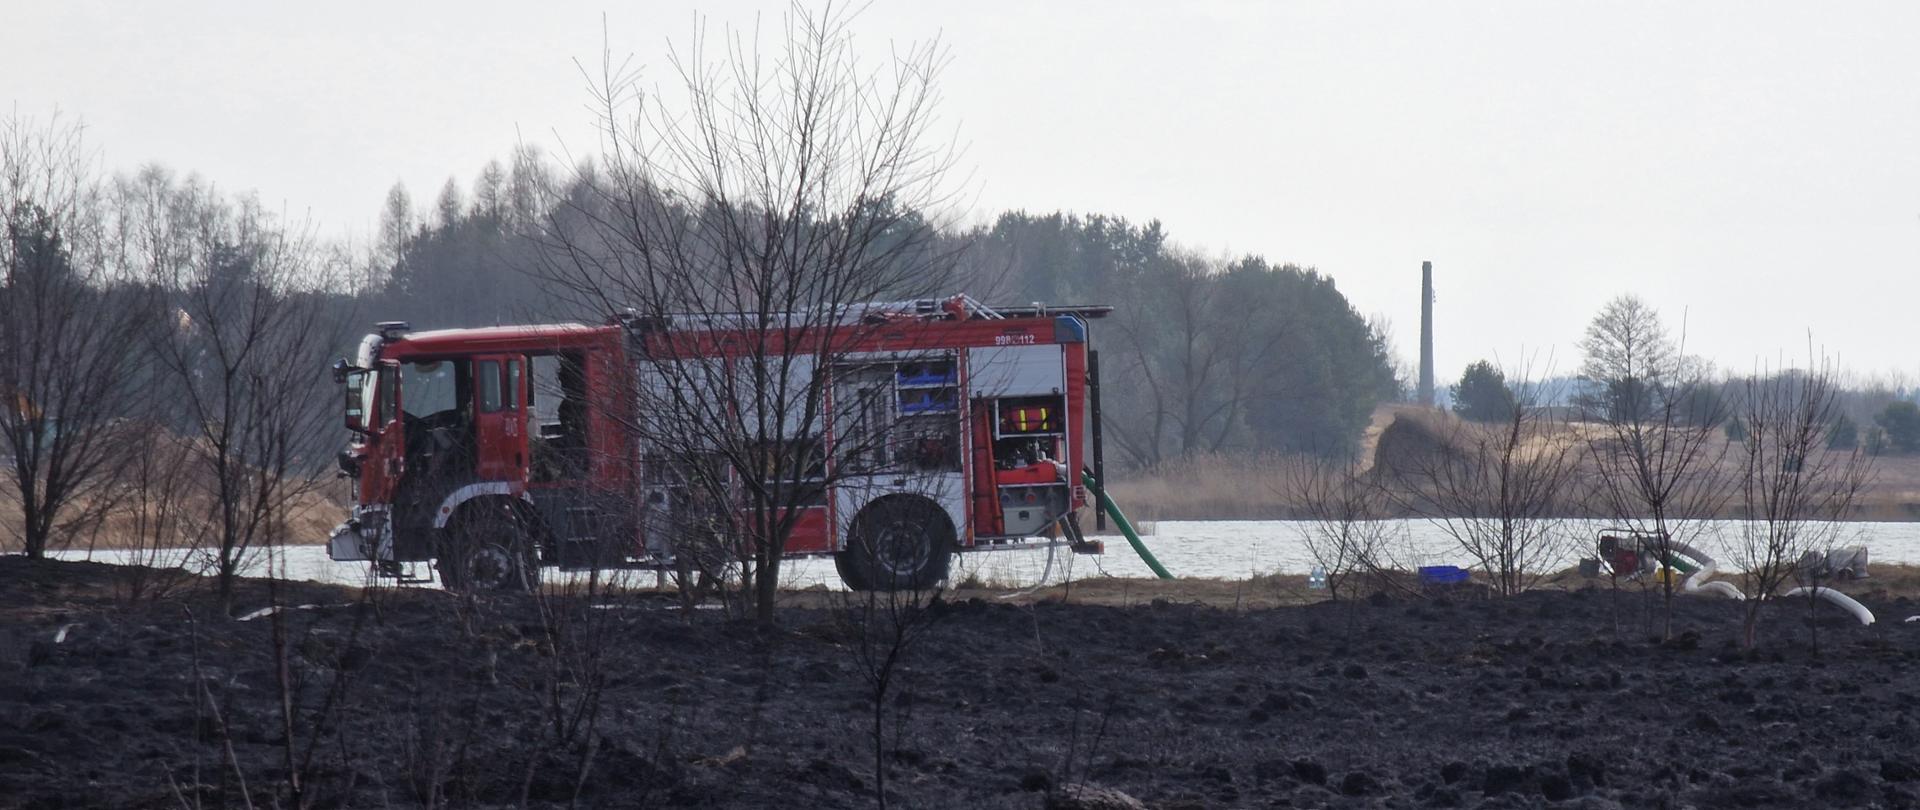 Strażacy dogaszający pożar nieużytkowanych powierzchni rolniczych w Brodach, w tle samochód pożarniczy